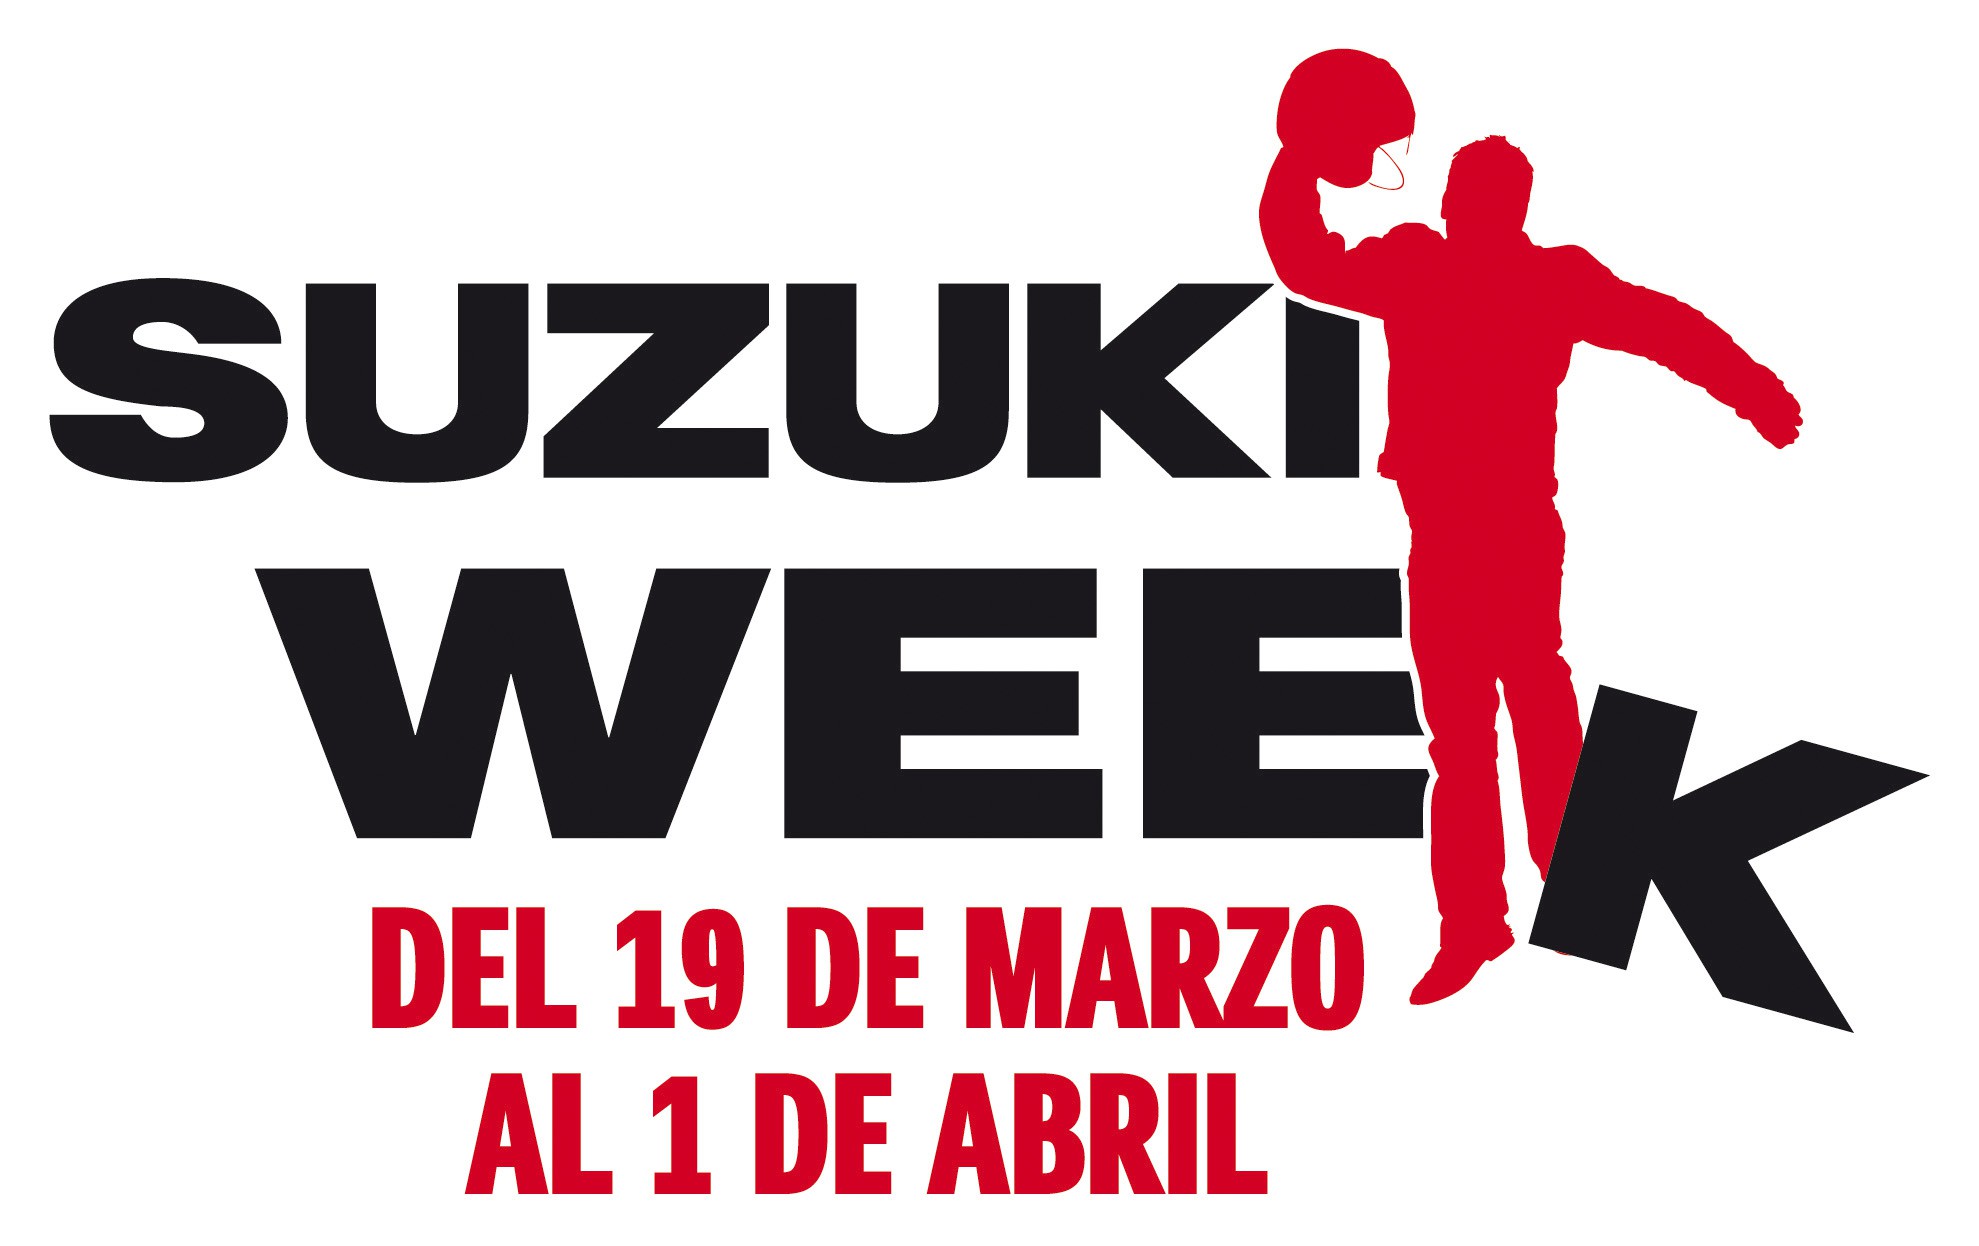 La semana fantástica, Suzuki week